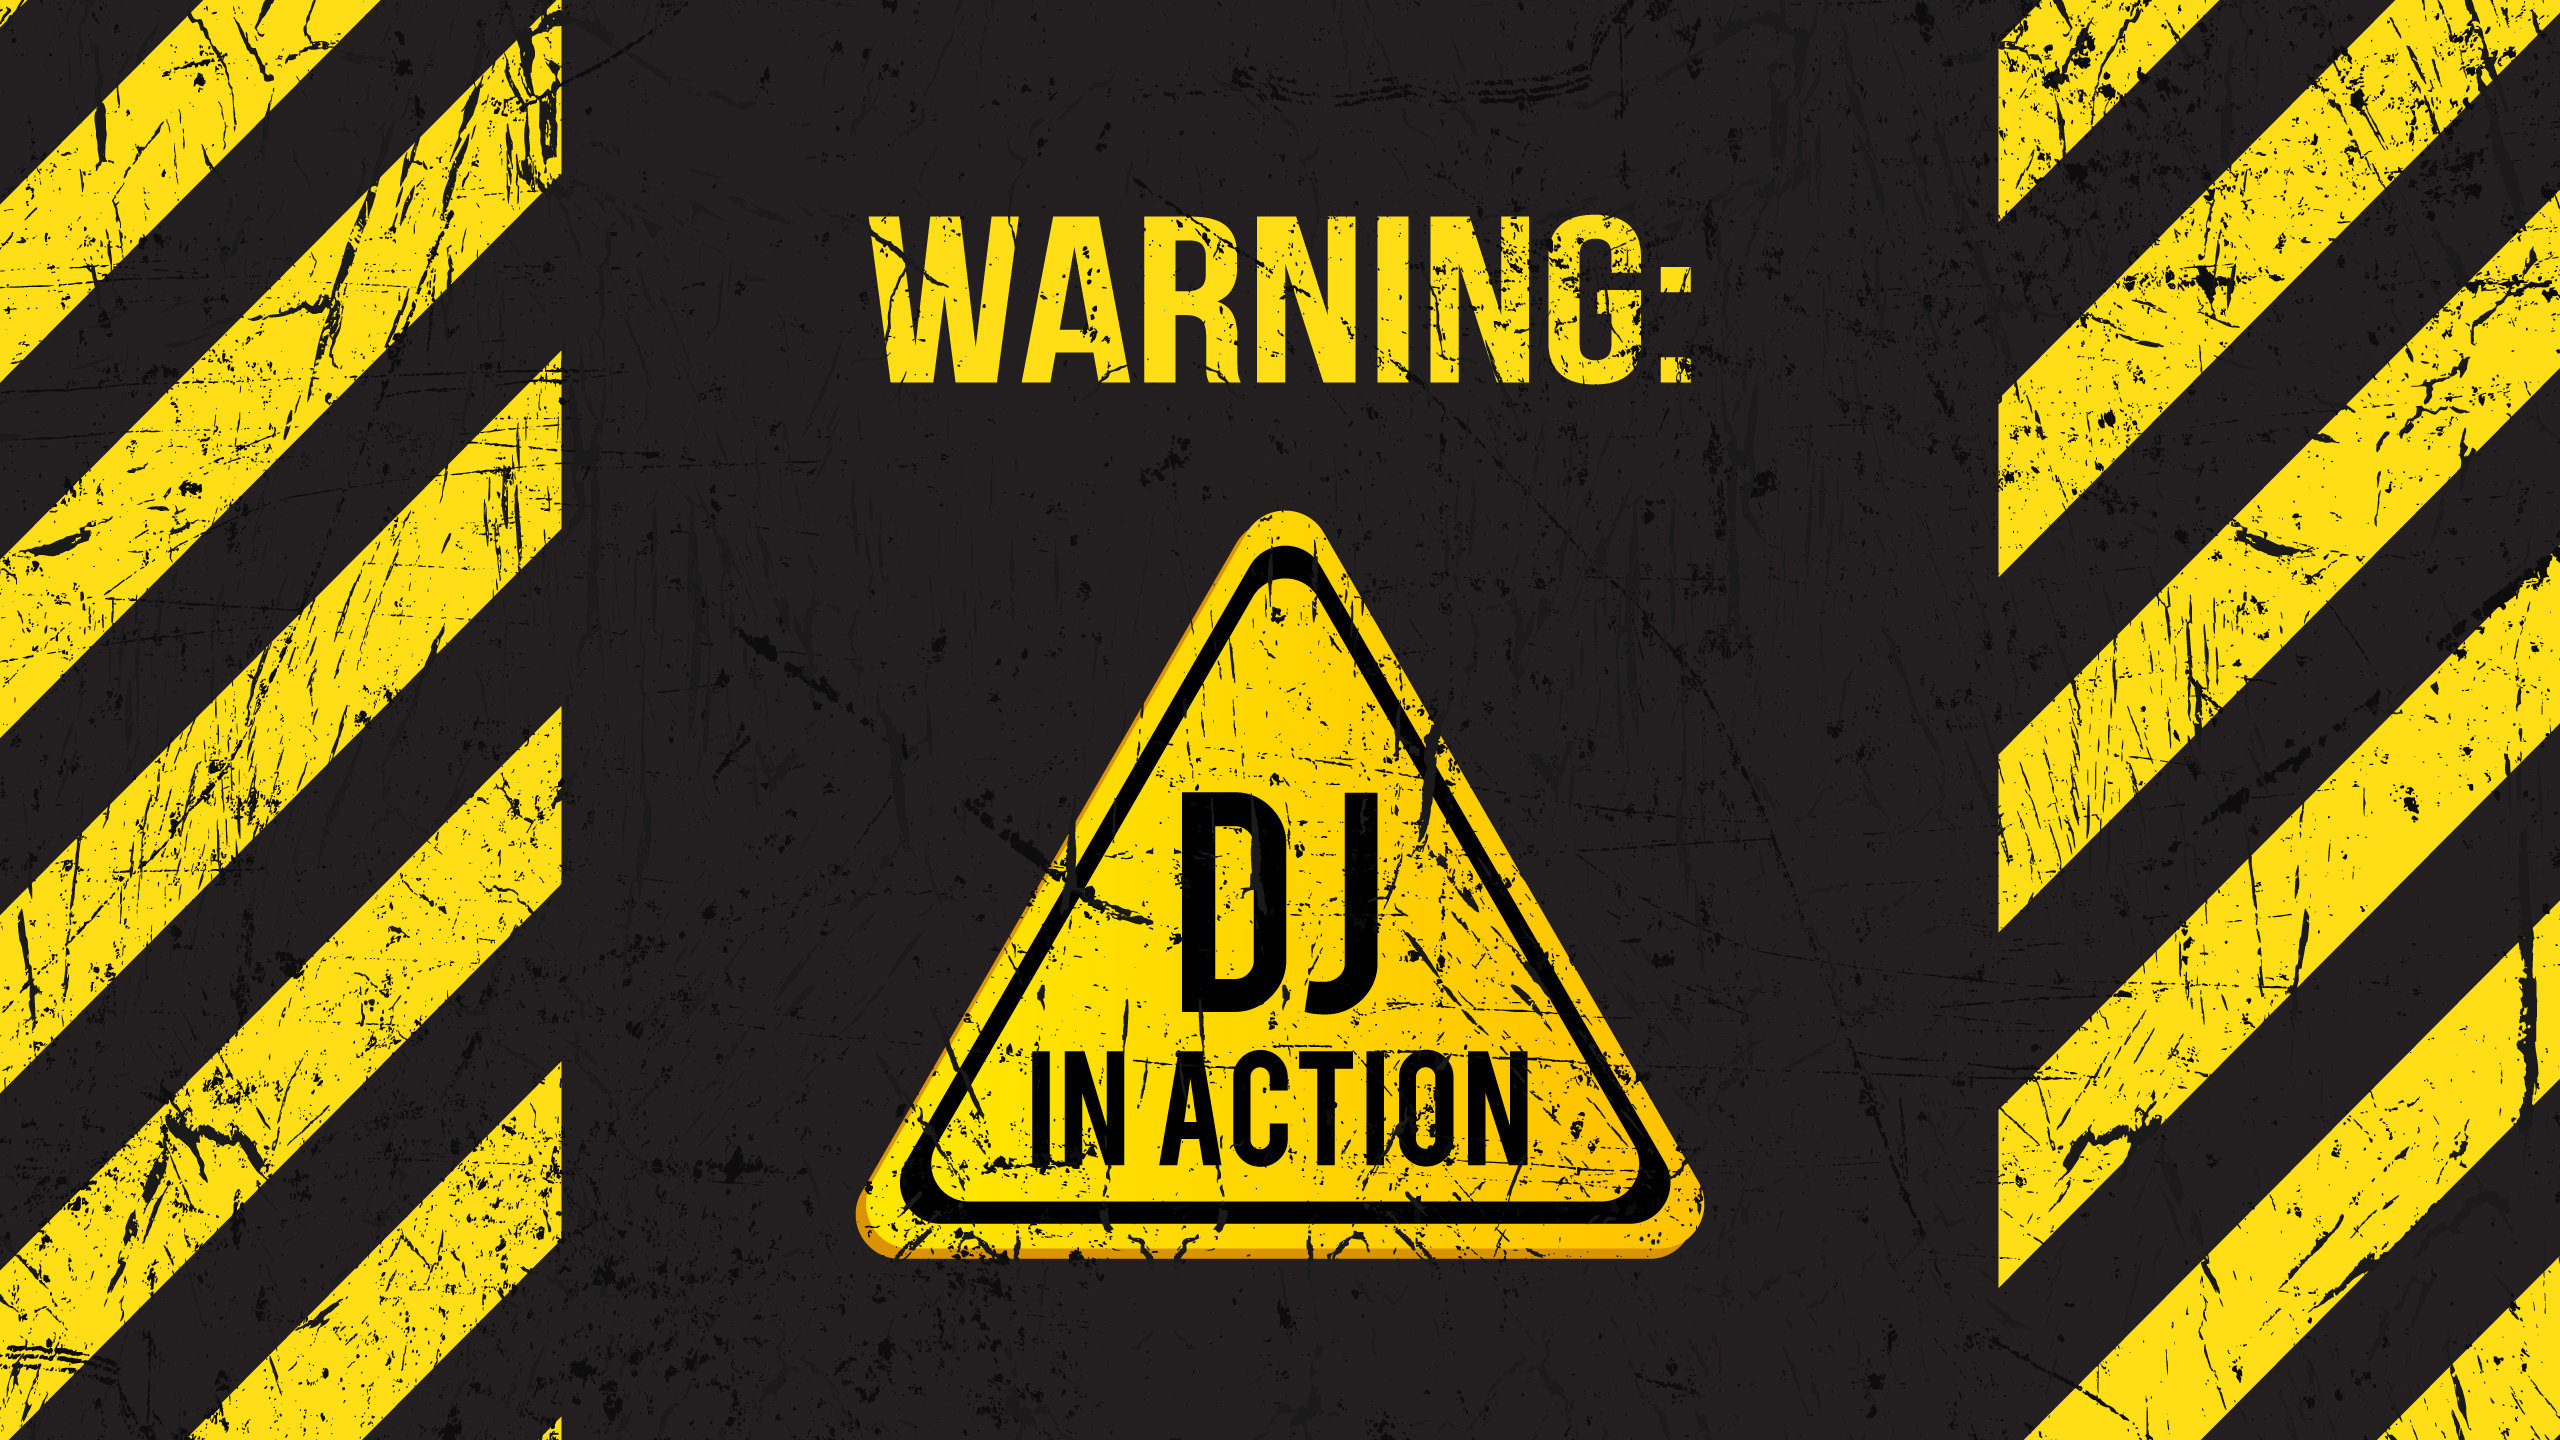 Warning DJ in Action Wallpaper